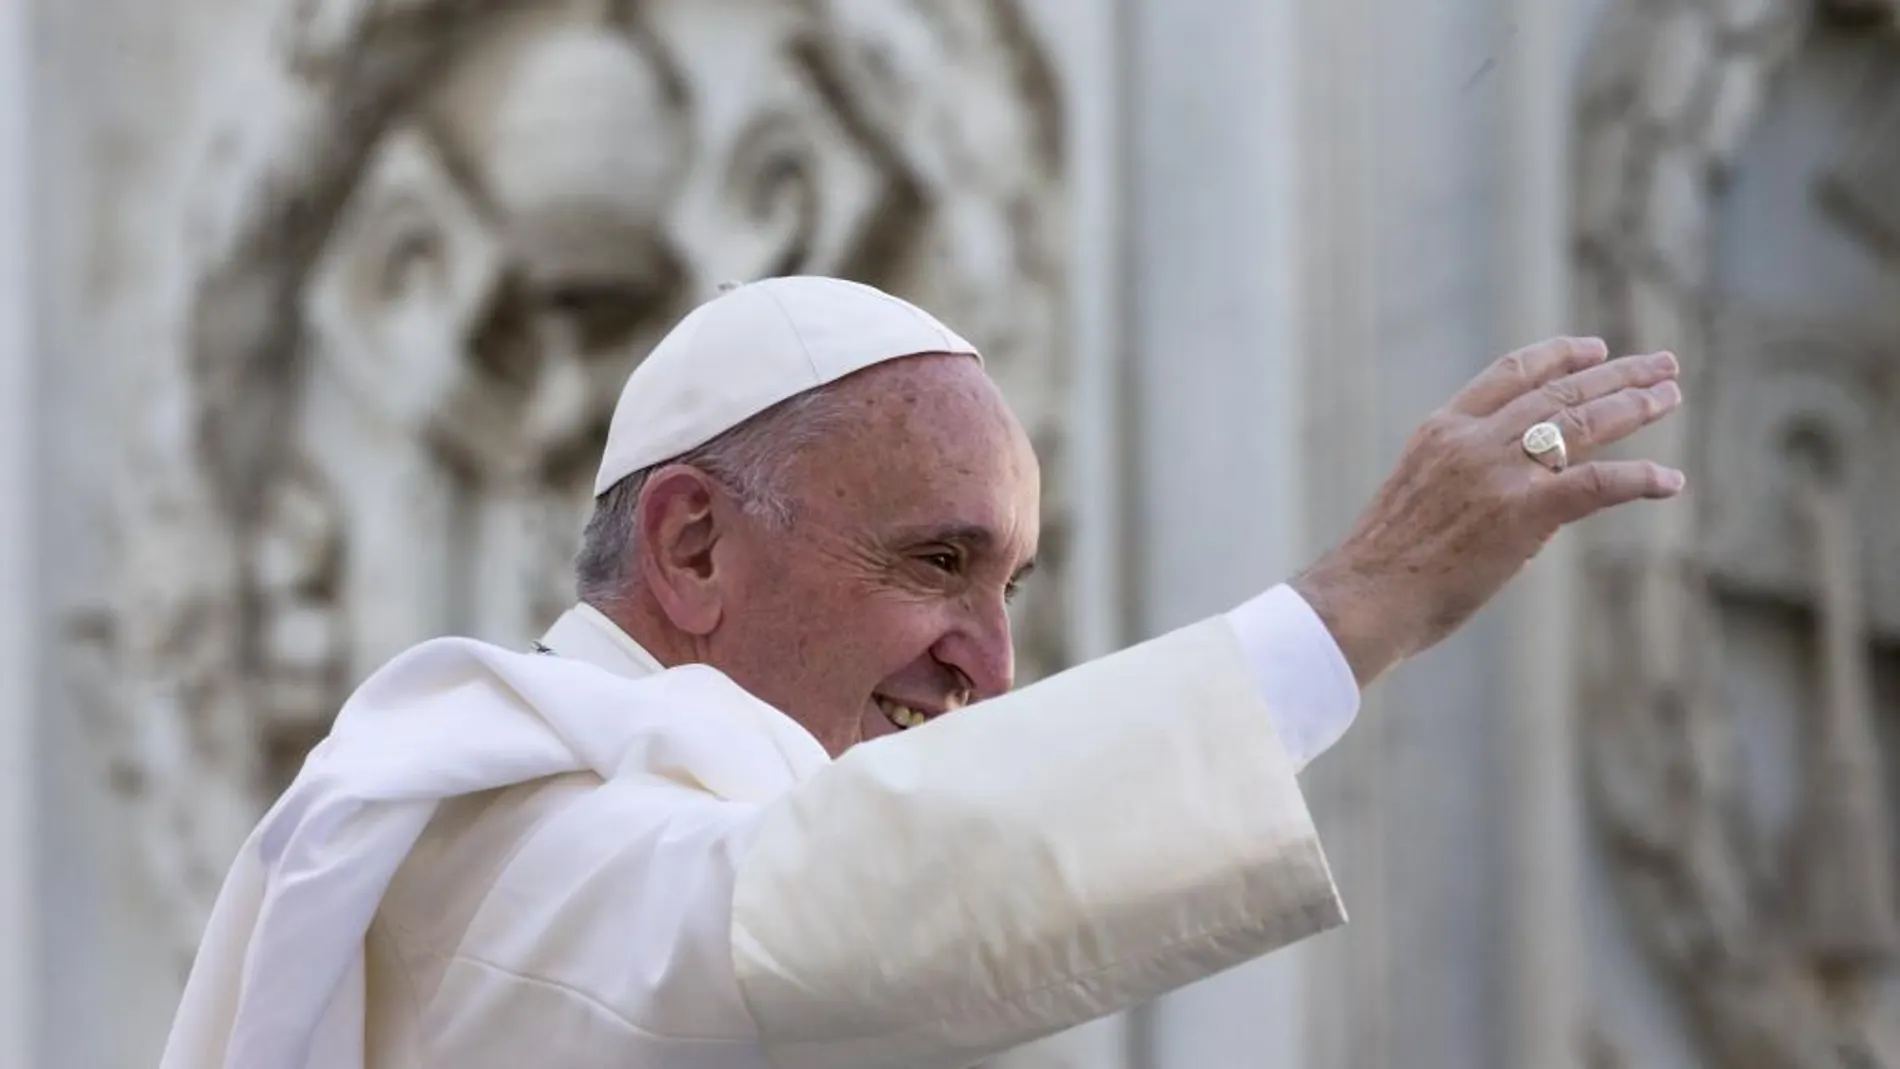 El Papa: "Comulgar no es sólo un premio para los buenos, sino el sustento para los débiles y pecadores"